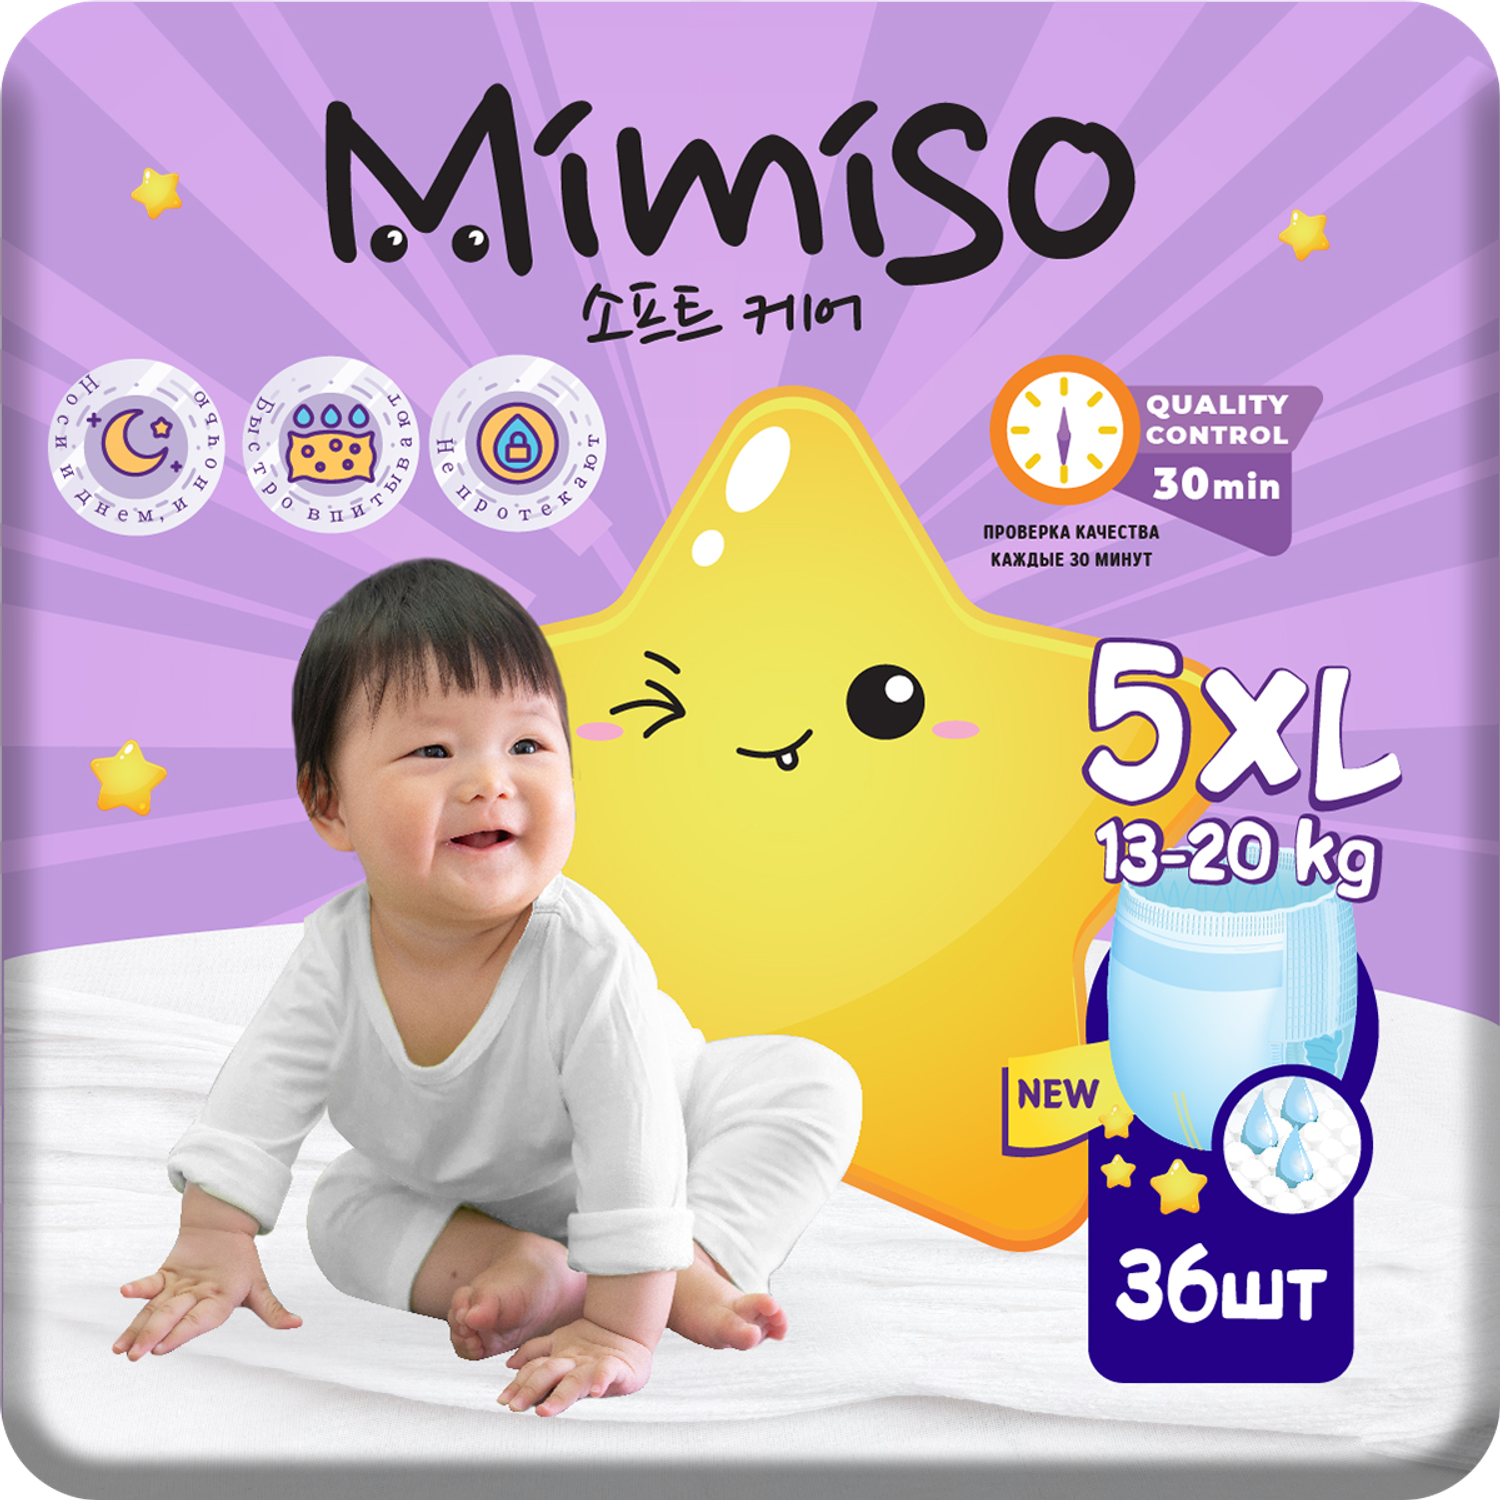 Трусики Mimiso одноразовые для детей 5/XL 13-20 кг 36шт - фото 1